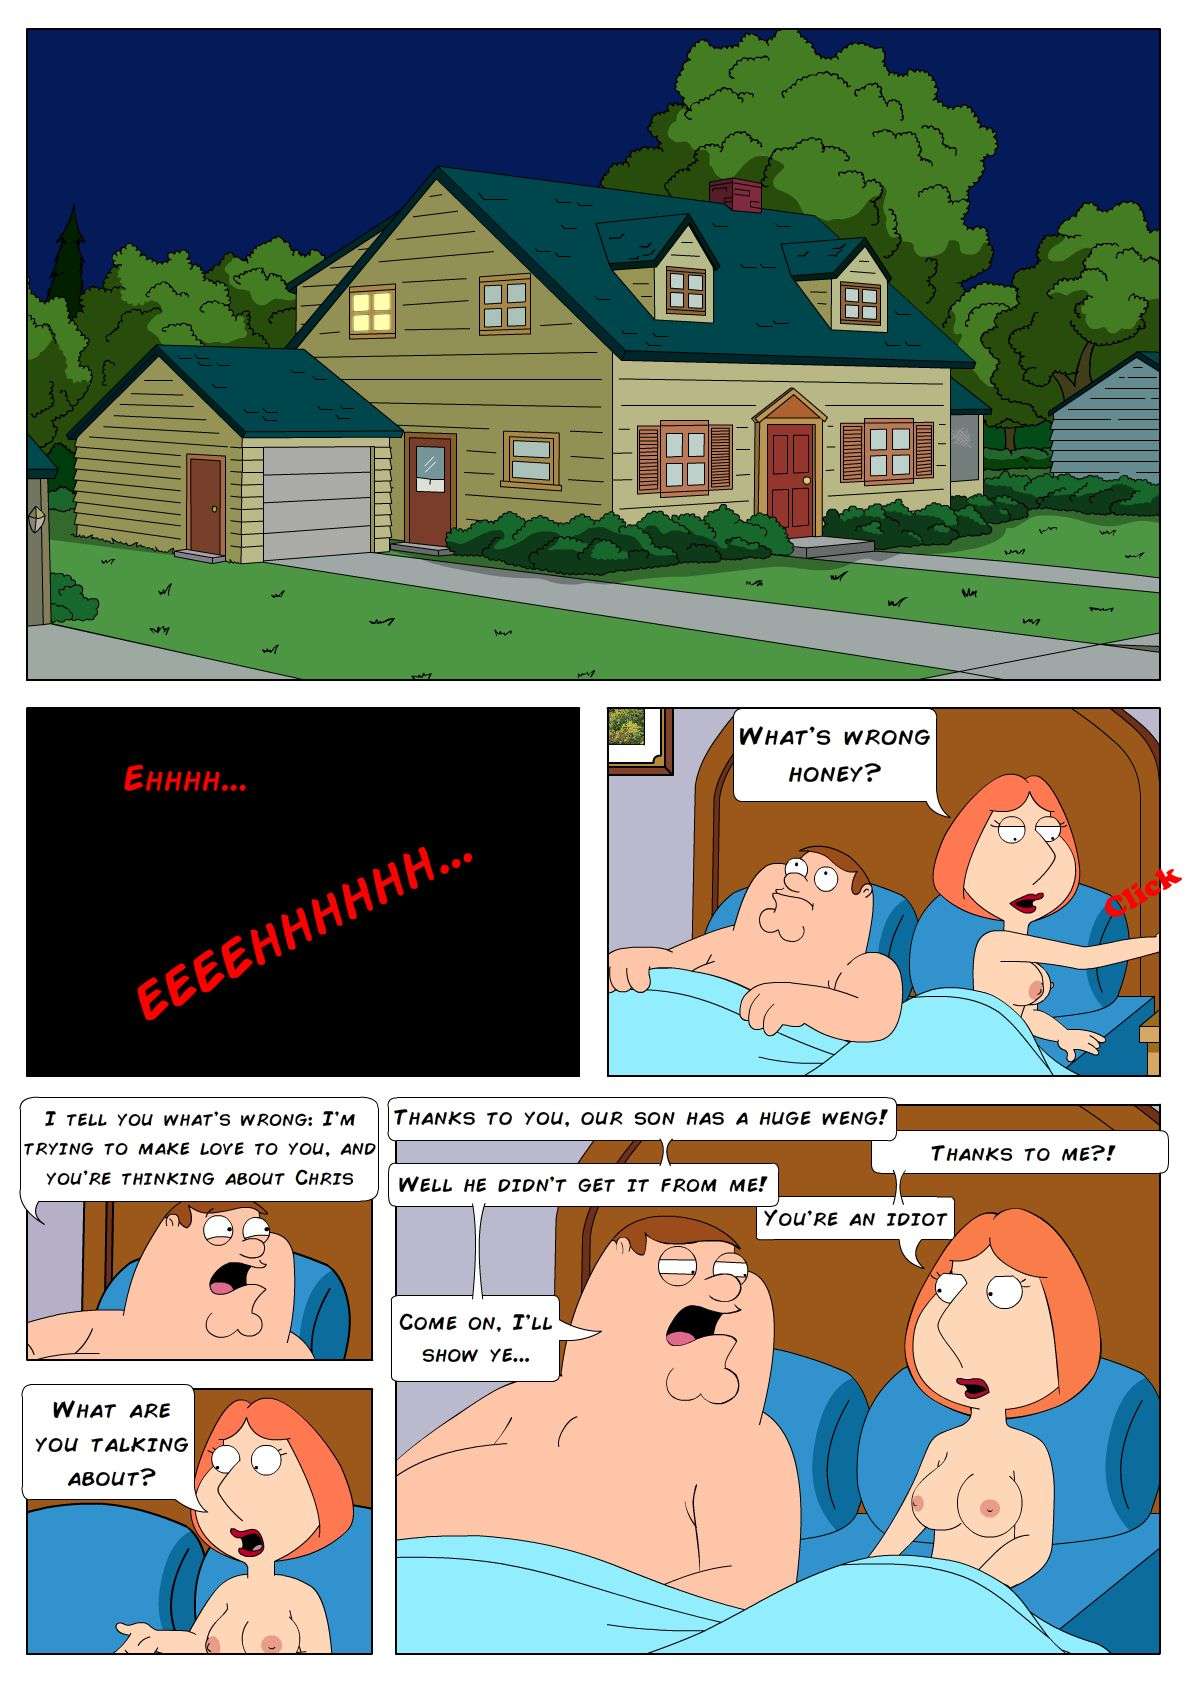 Sex cartoon family guy Family Guy